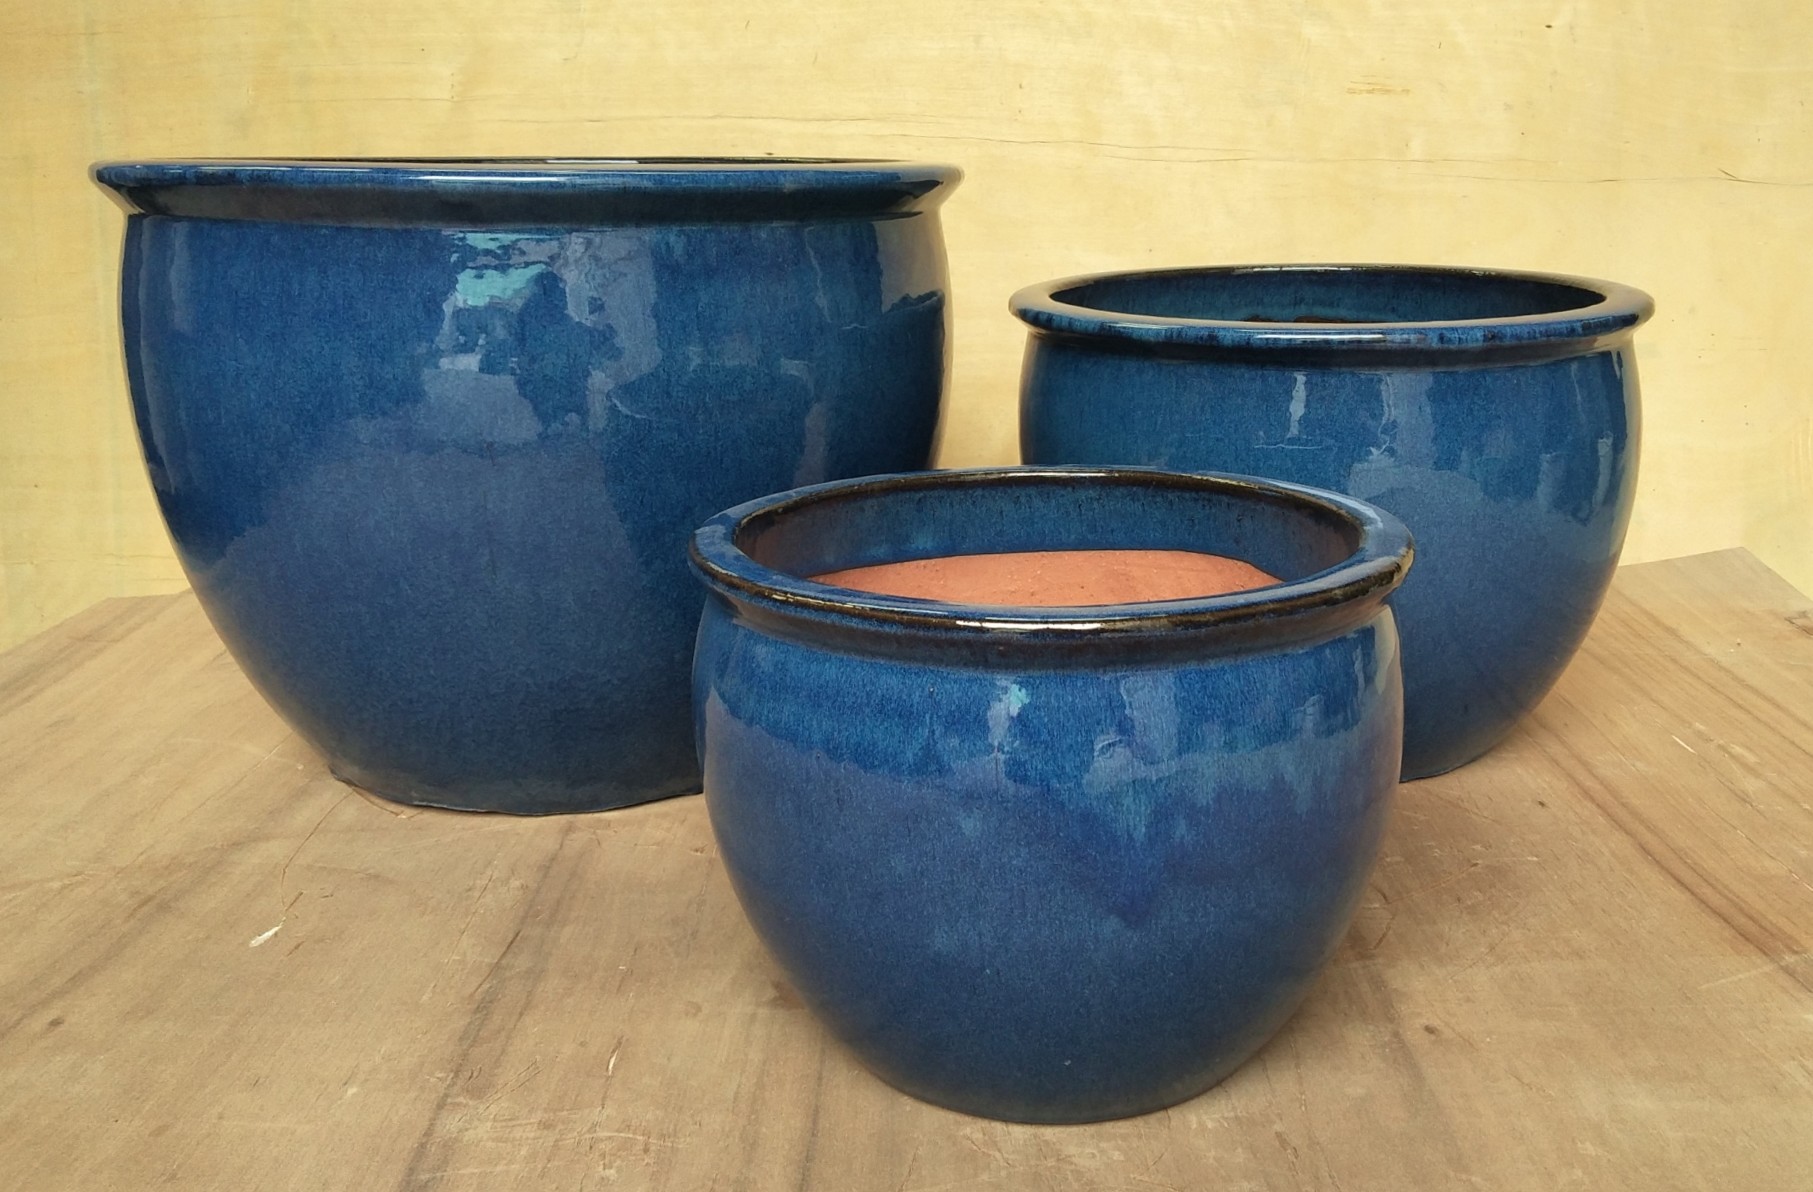 Outdoor Ceramic Pots, Ceramic Pots, Pottery Pots, GW8594 S/4